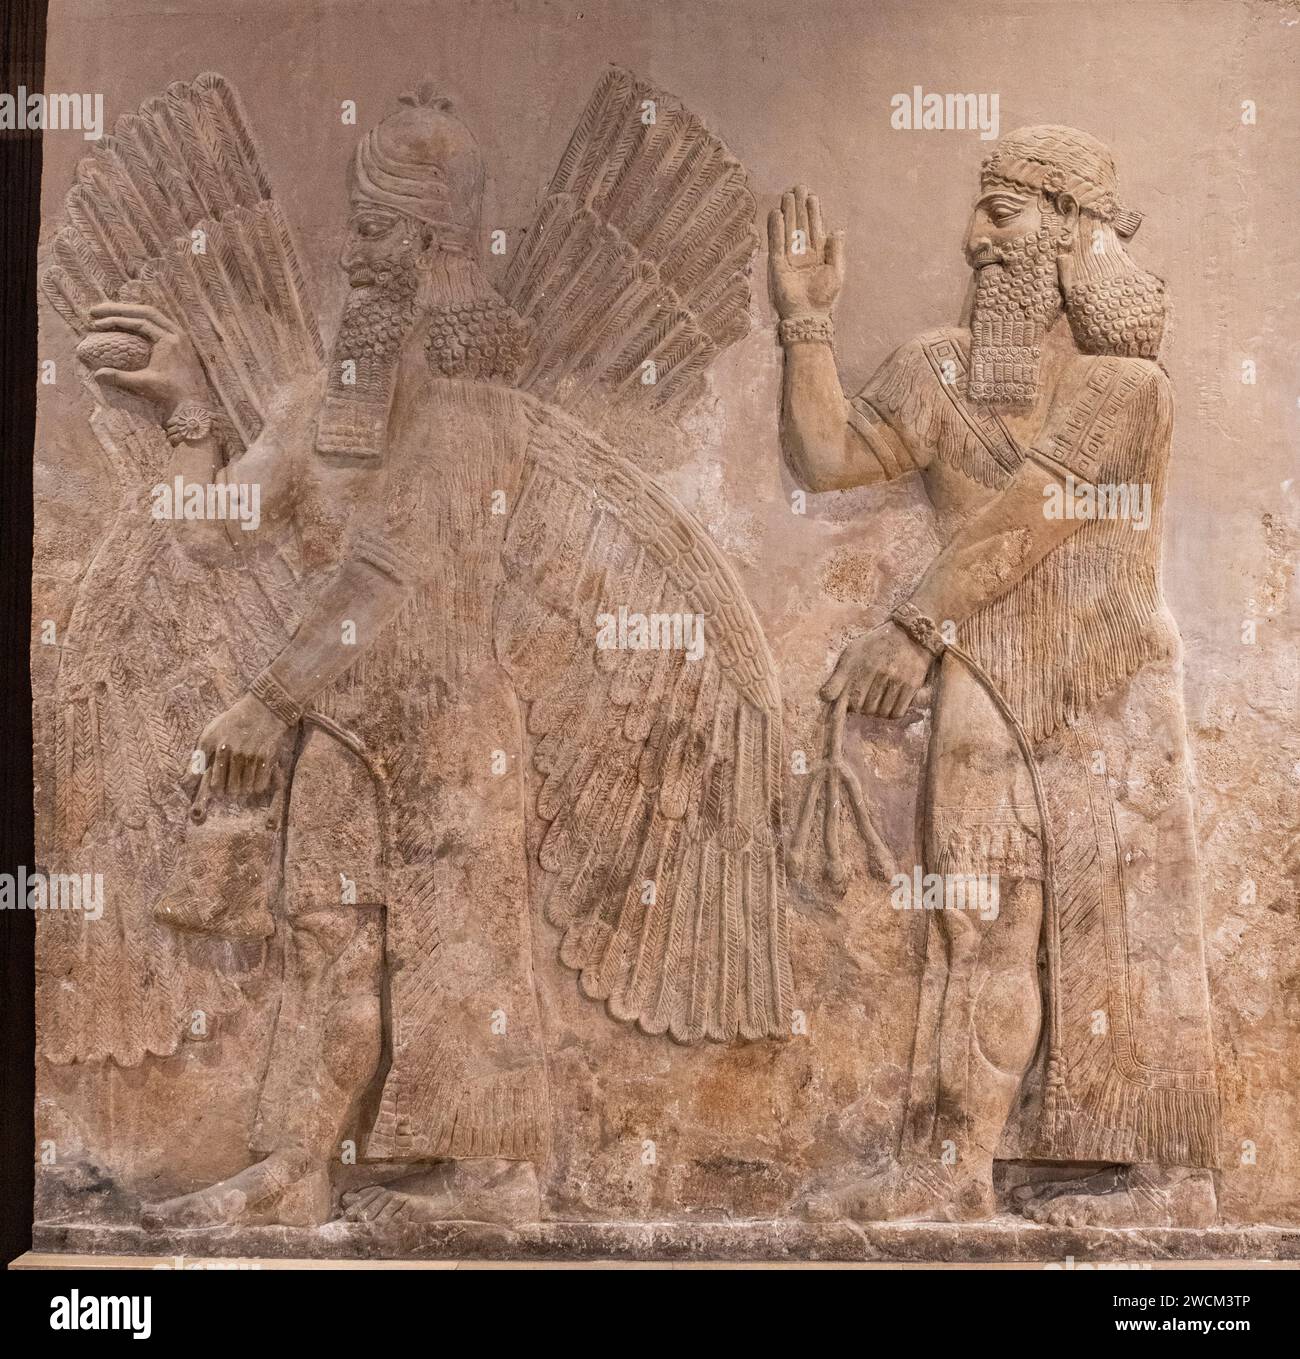 Rilievo in pietra intagliata della divinità alata dal palazzo assiro di Dur-Sharrukin; Khorsabad, Iraq, ora nel Museo dell'Iraq, Baghdad, Iraq Foto Stock